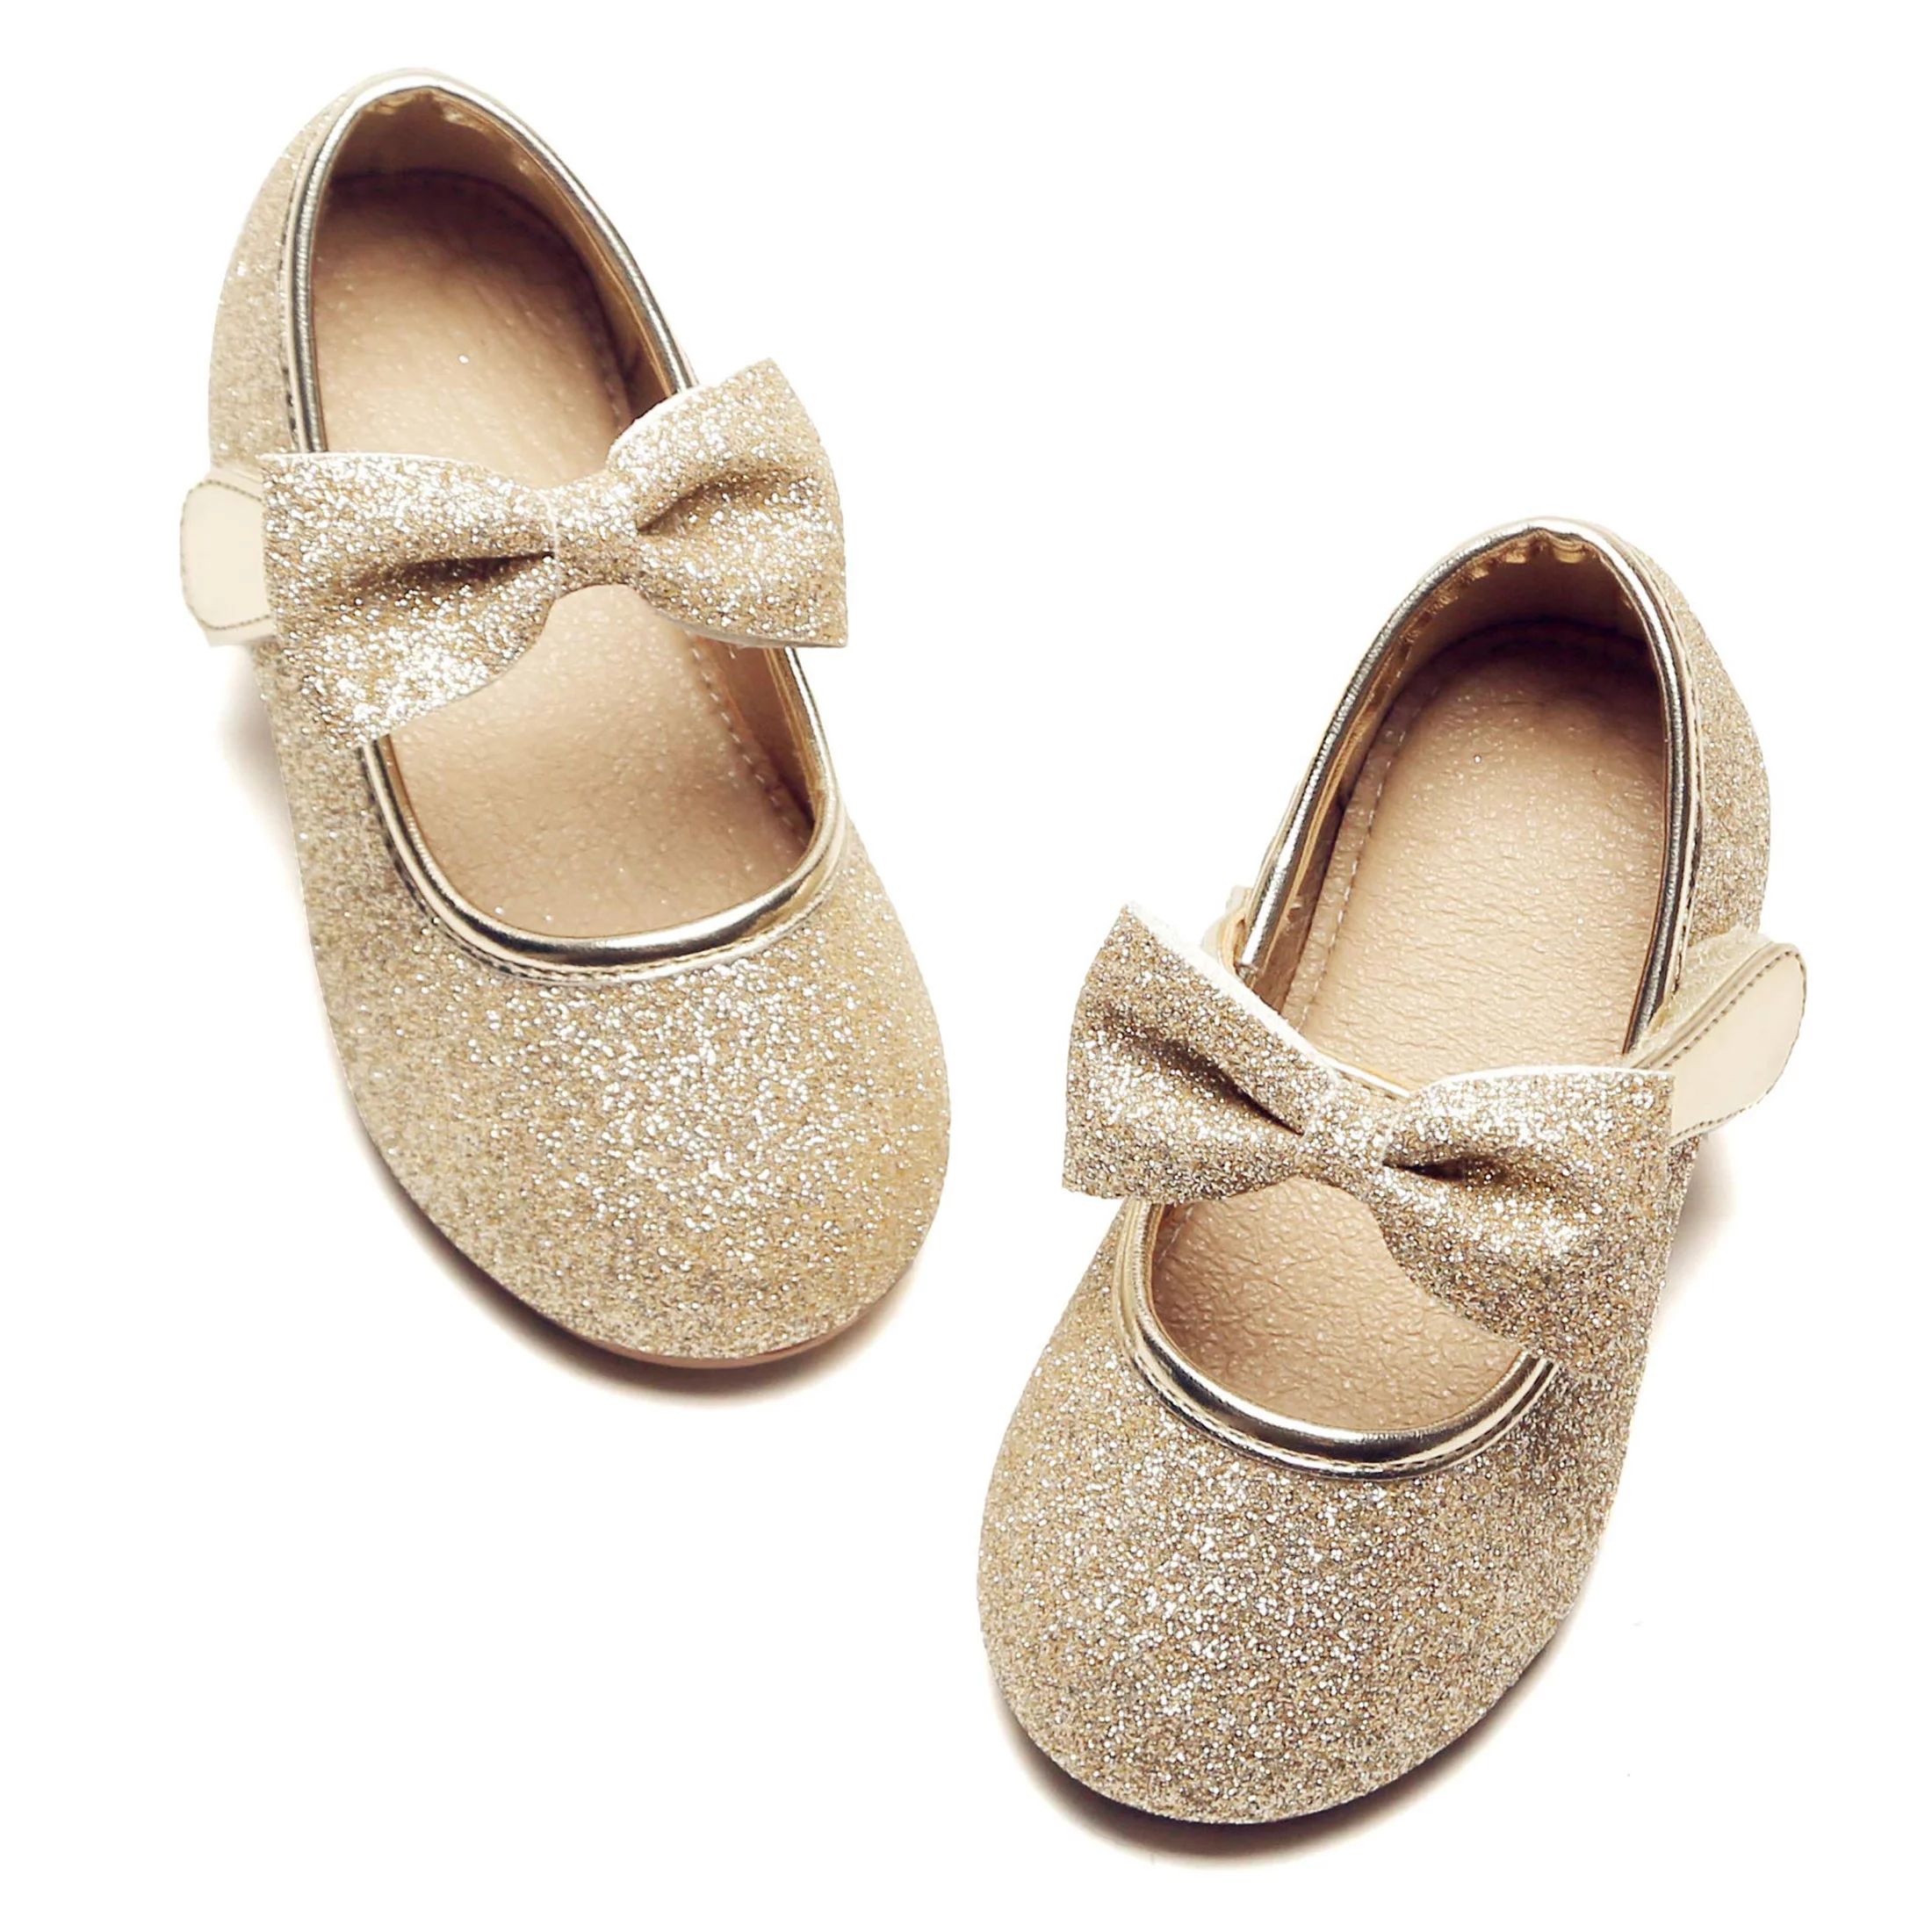 Little Girl Gold Dress Shoes Size 1 - Girl Ballet Flats Wedding Party - Walmart.com | Walmart (US)